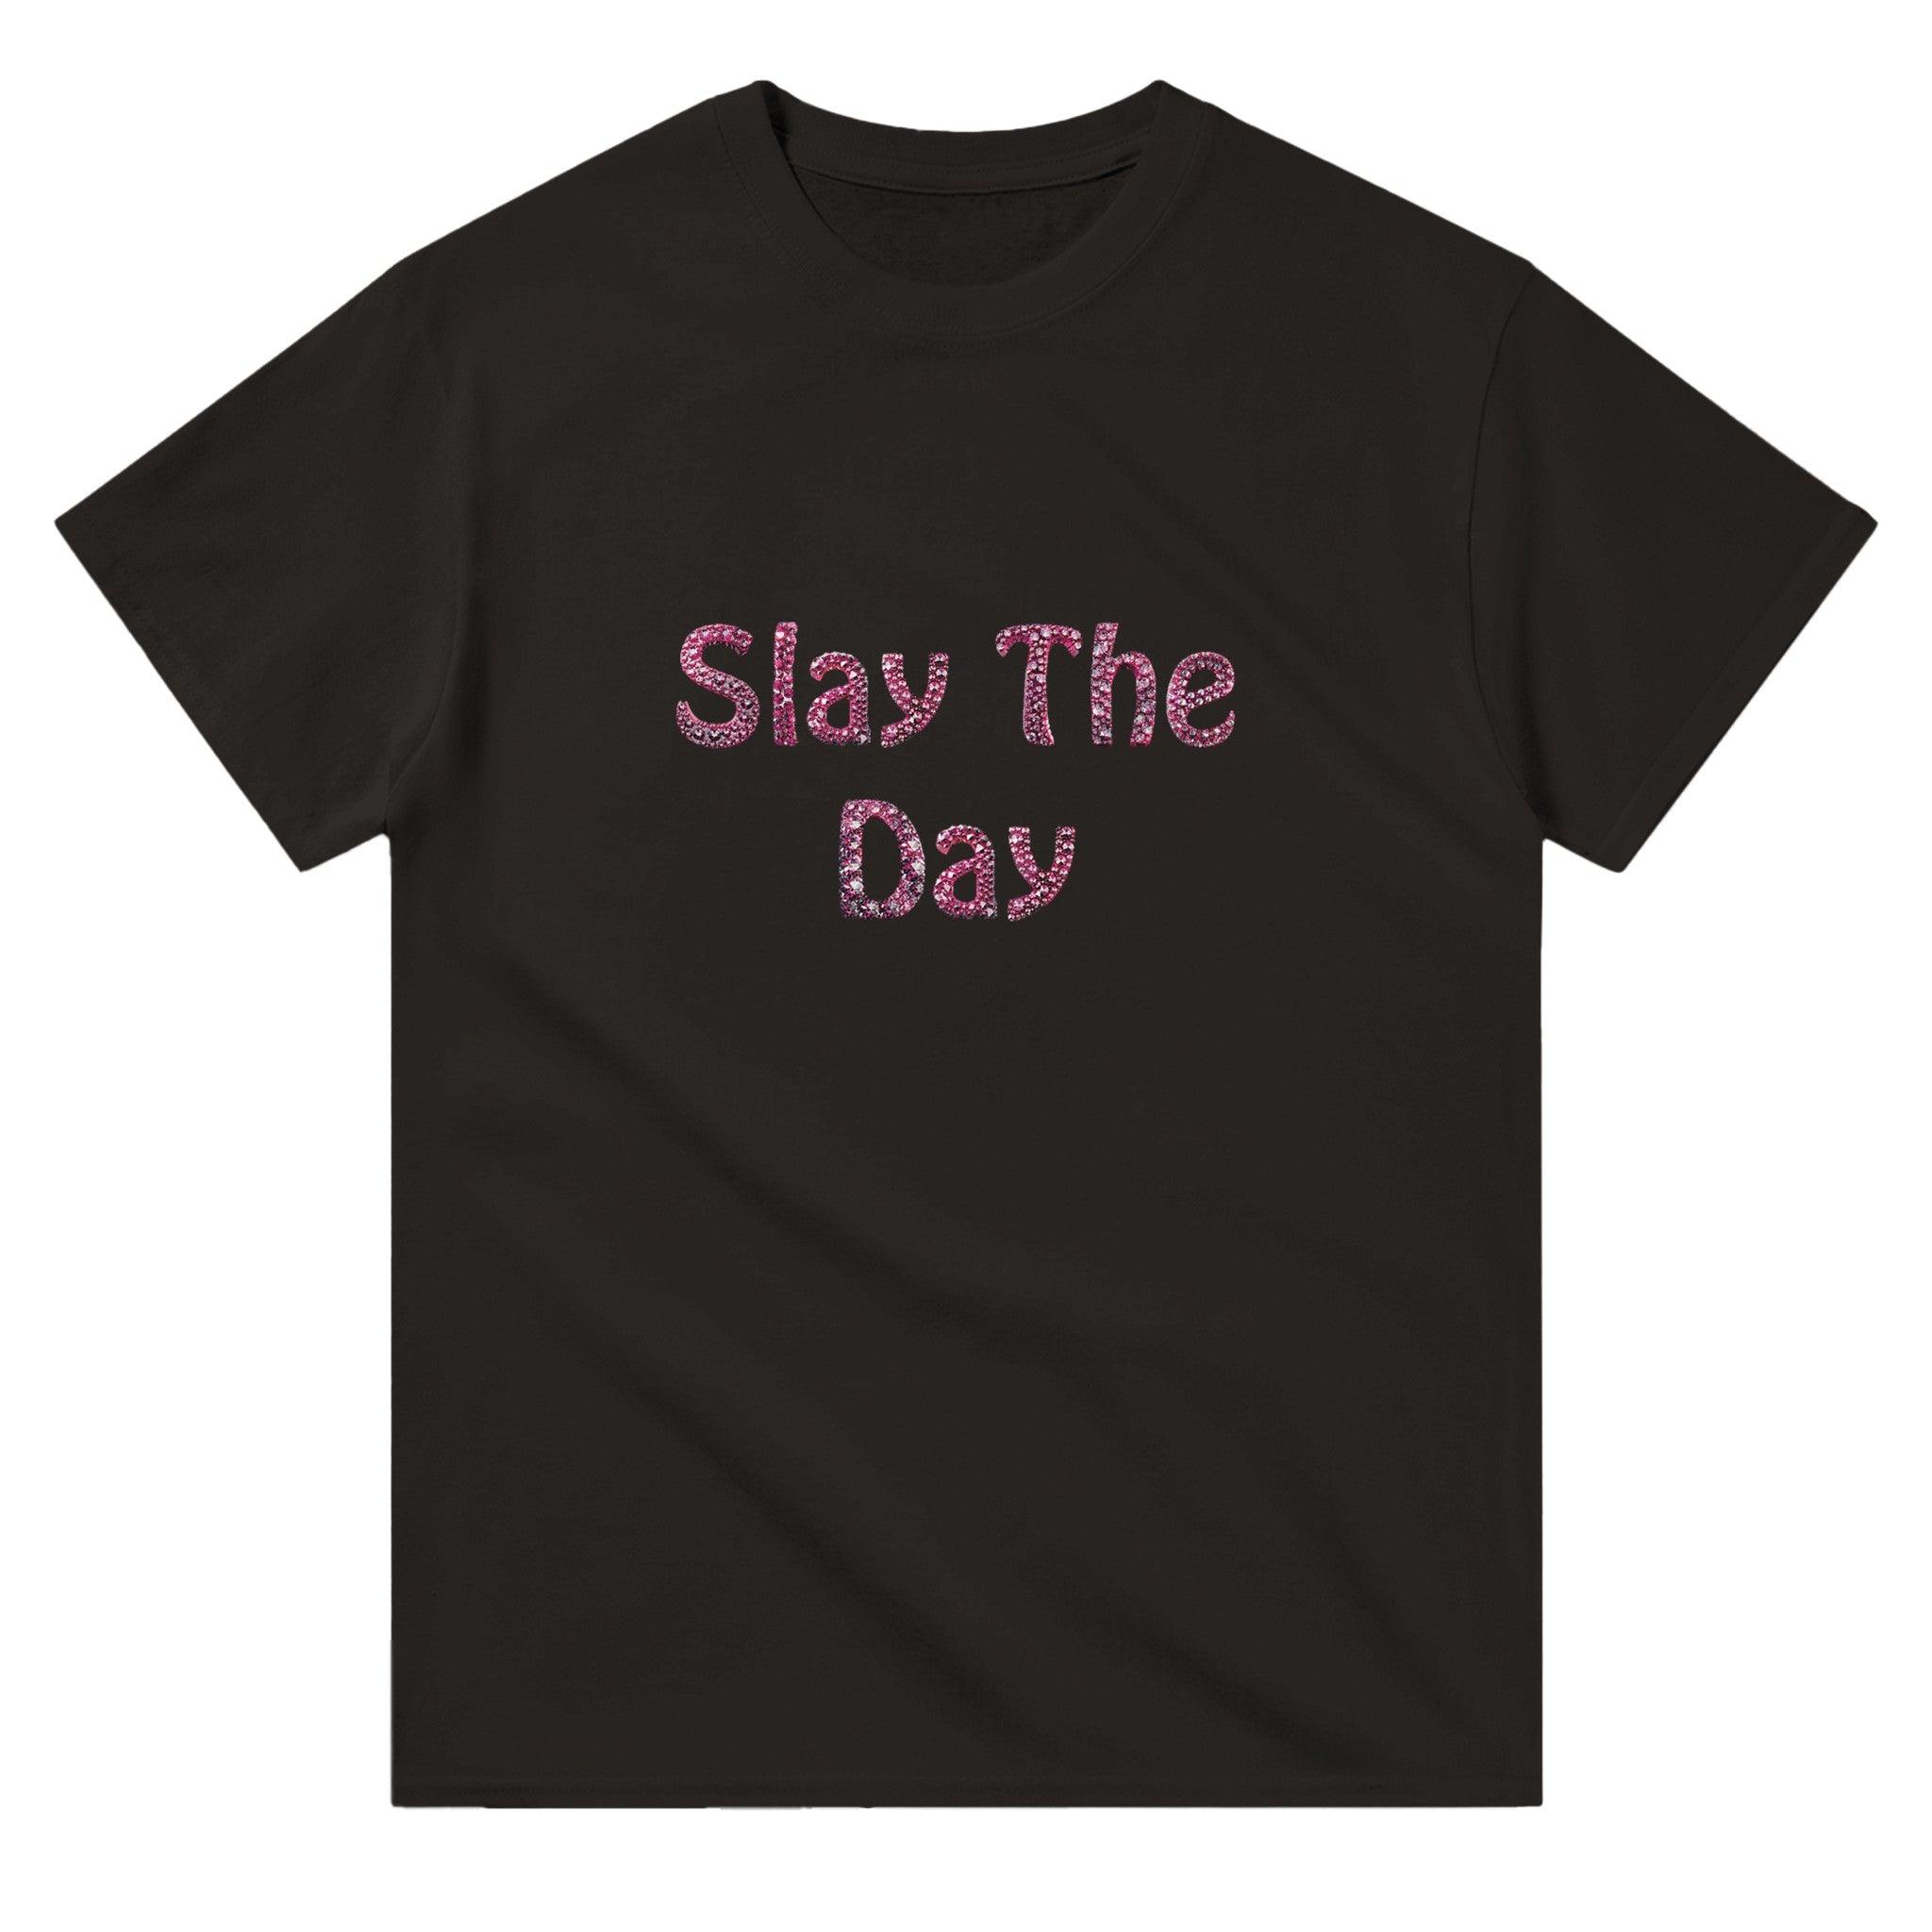 'Slay the day' Boyfriend T-shirt - POMA